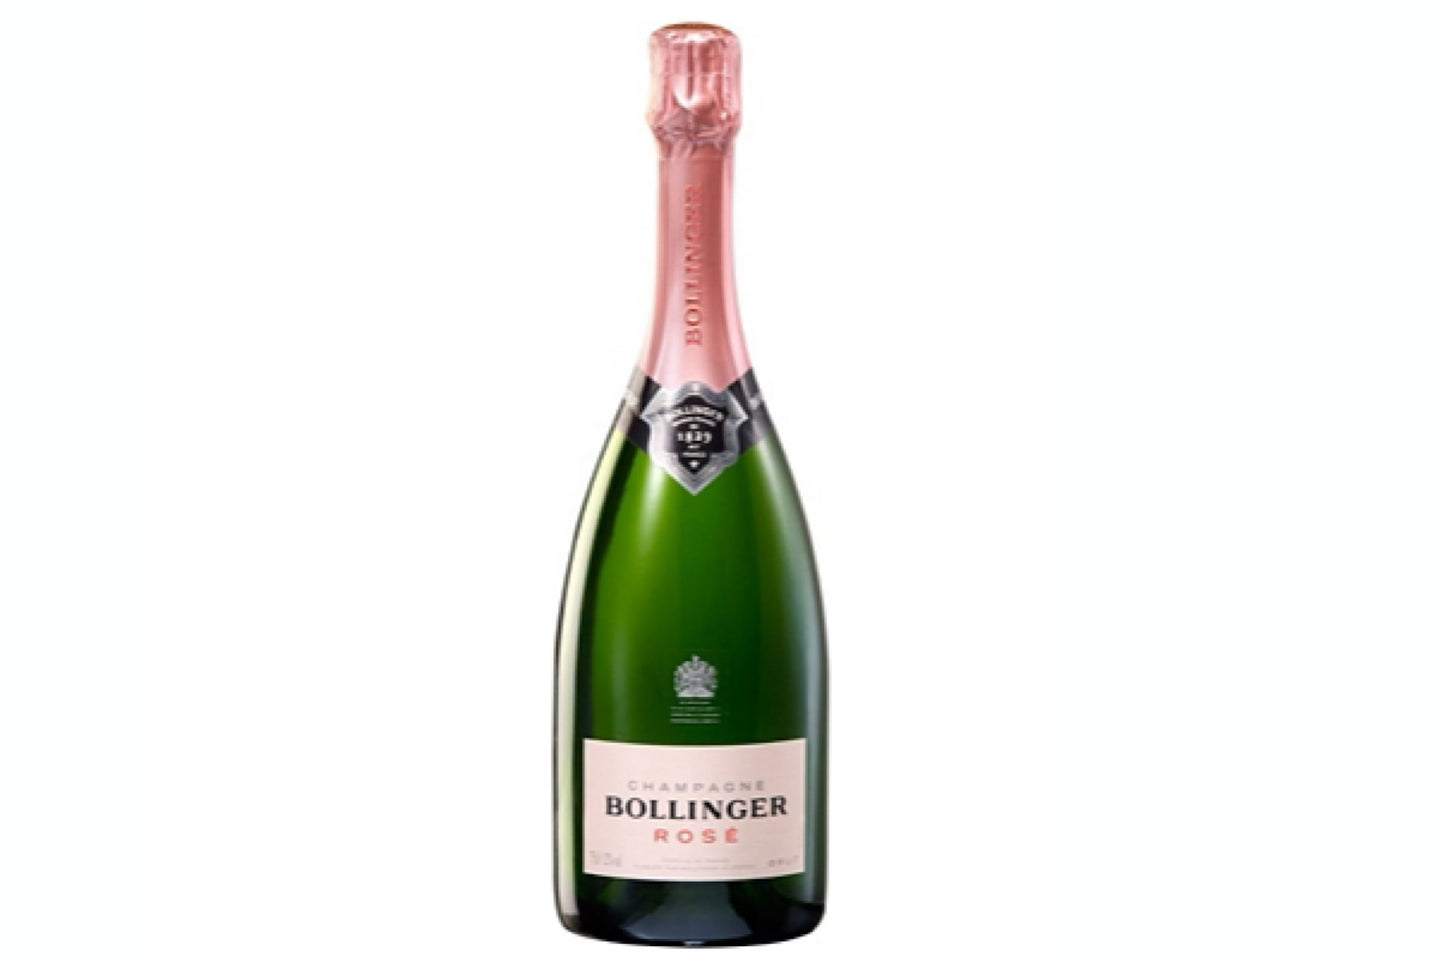 Bollinger rose champagne |12%| 75cl